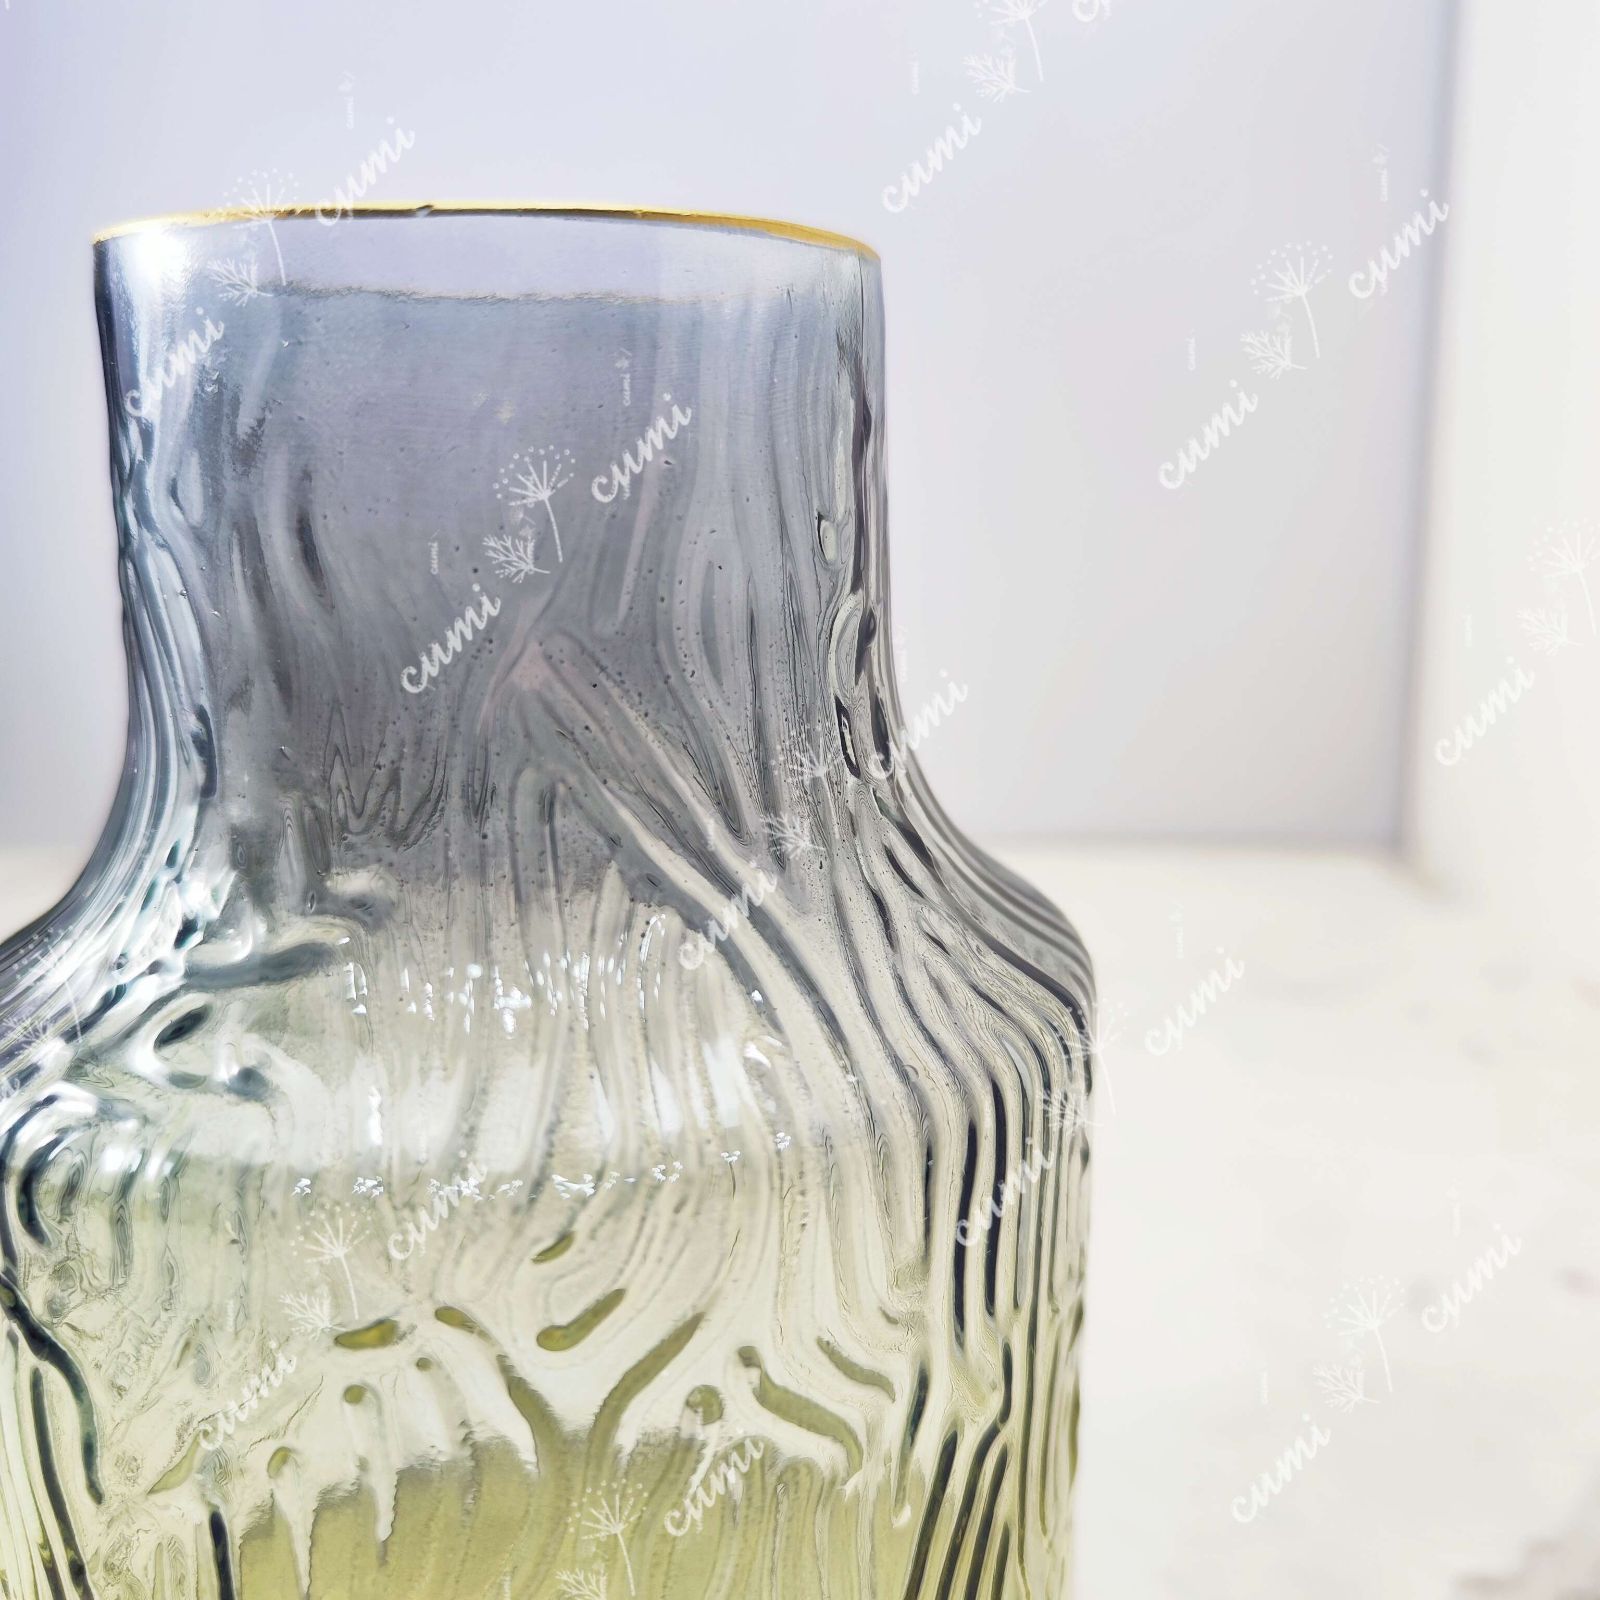 二色 金縁 花瓶 一輪挿し 高品質 室内 ガラス フラワーベース 激安 レア インテリア プレゼント 海外 おすすめ プランター 人気 デザイン  観葉植物